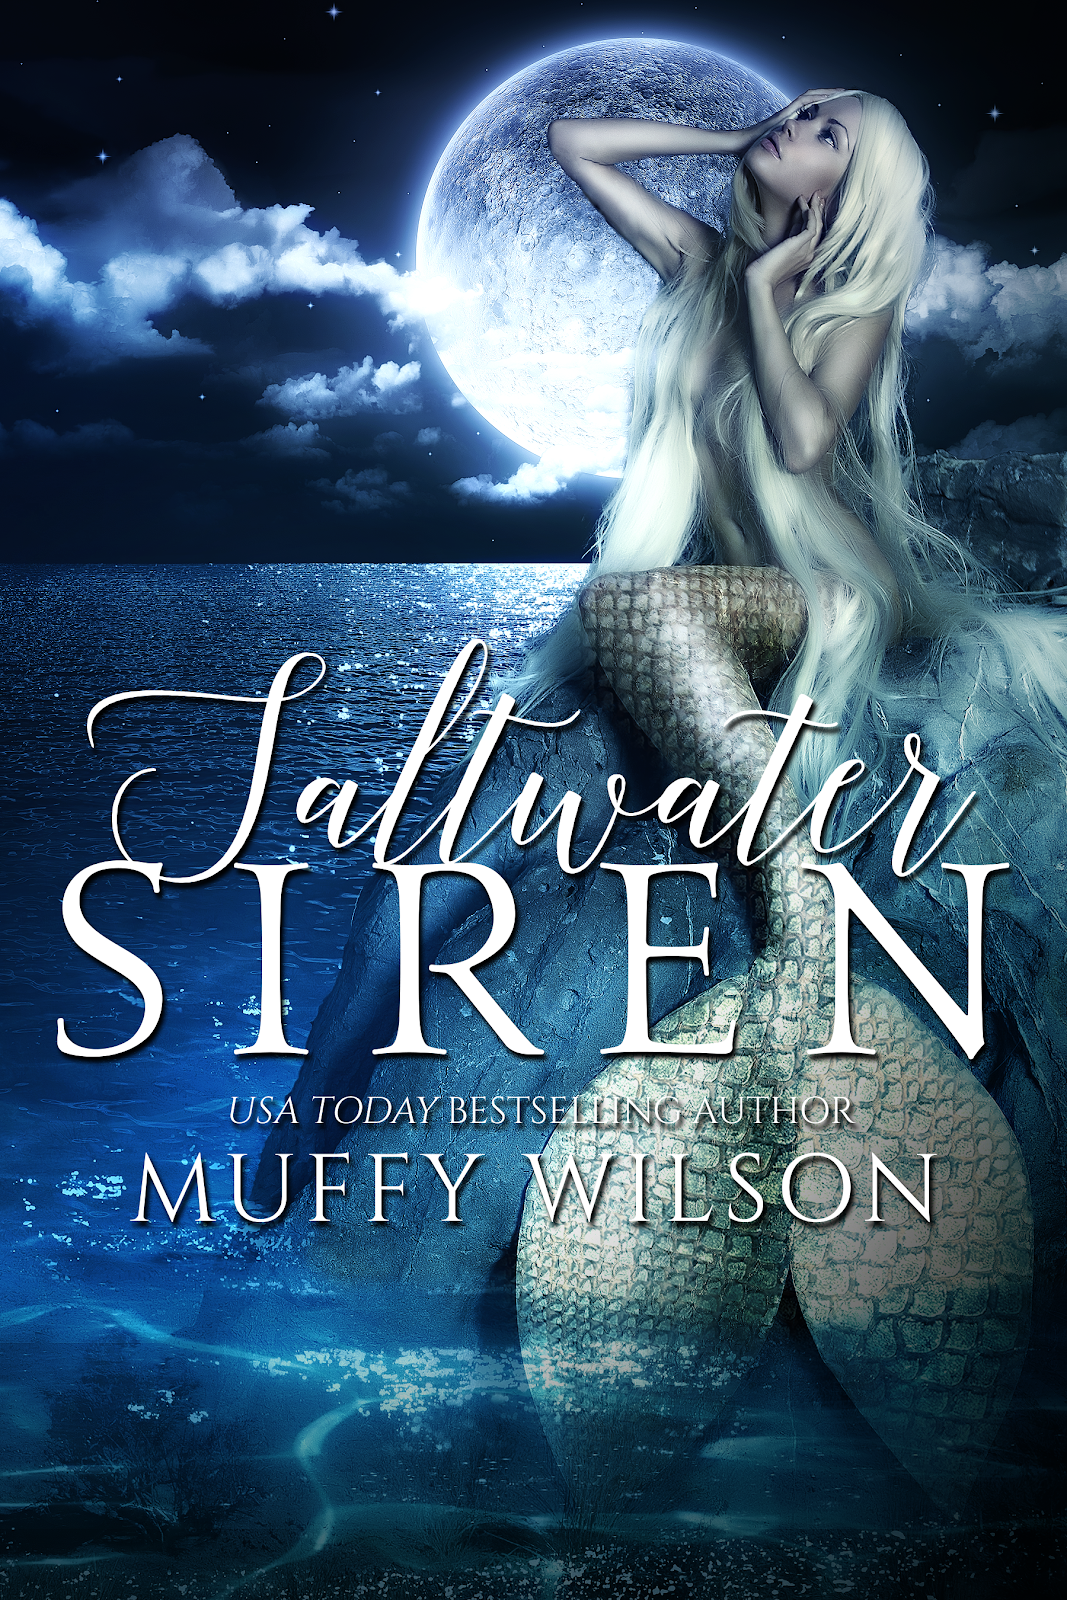 Saltwater Siren: Fairytales with a Twist